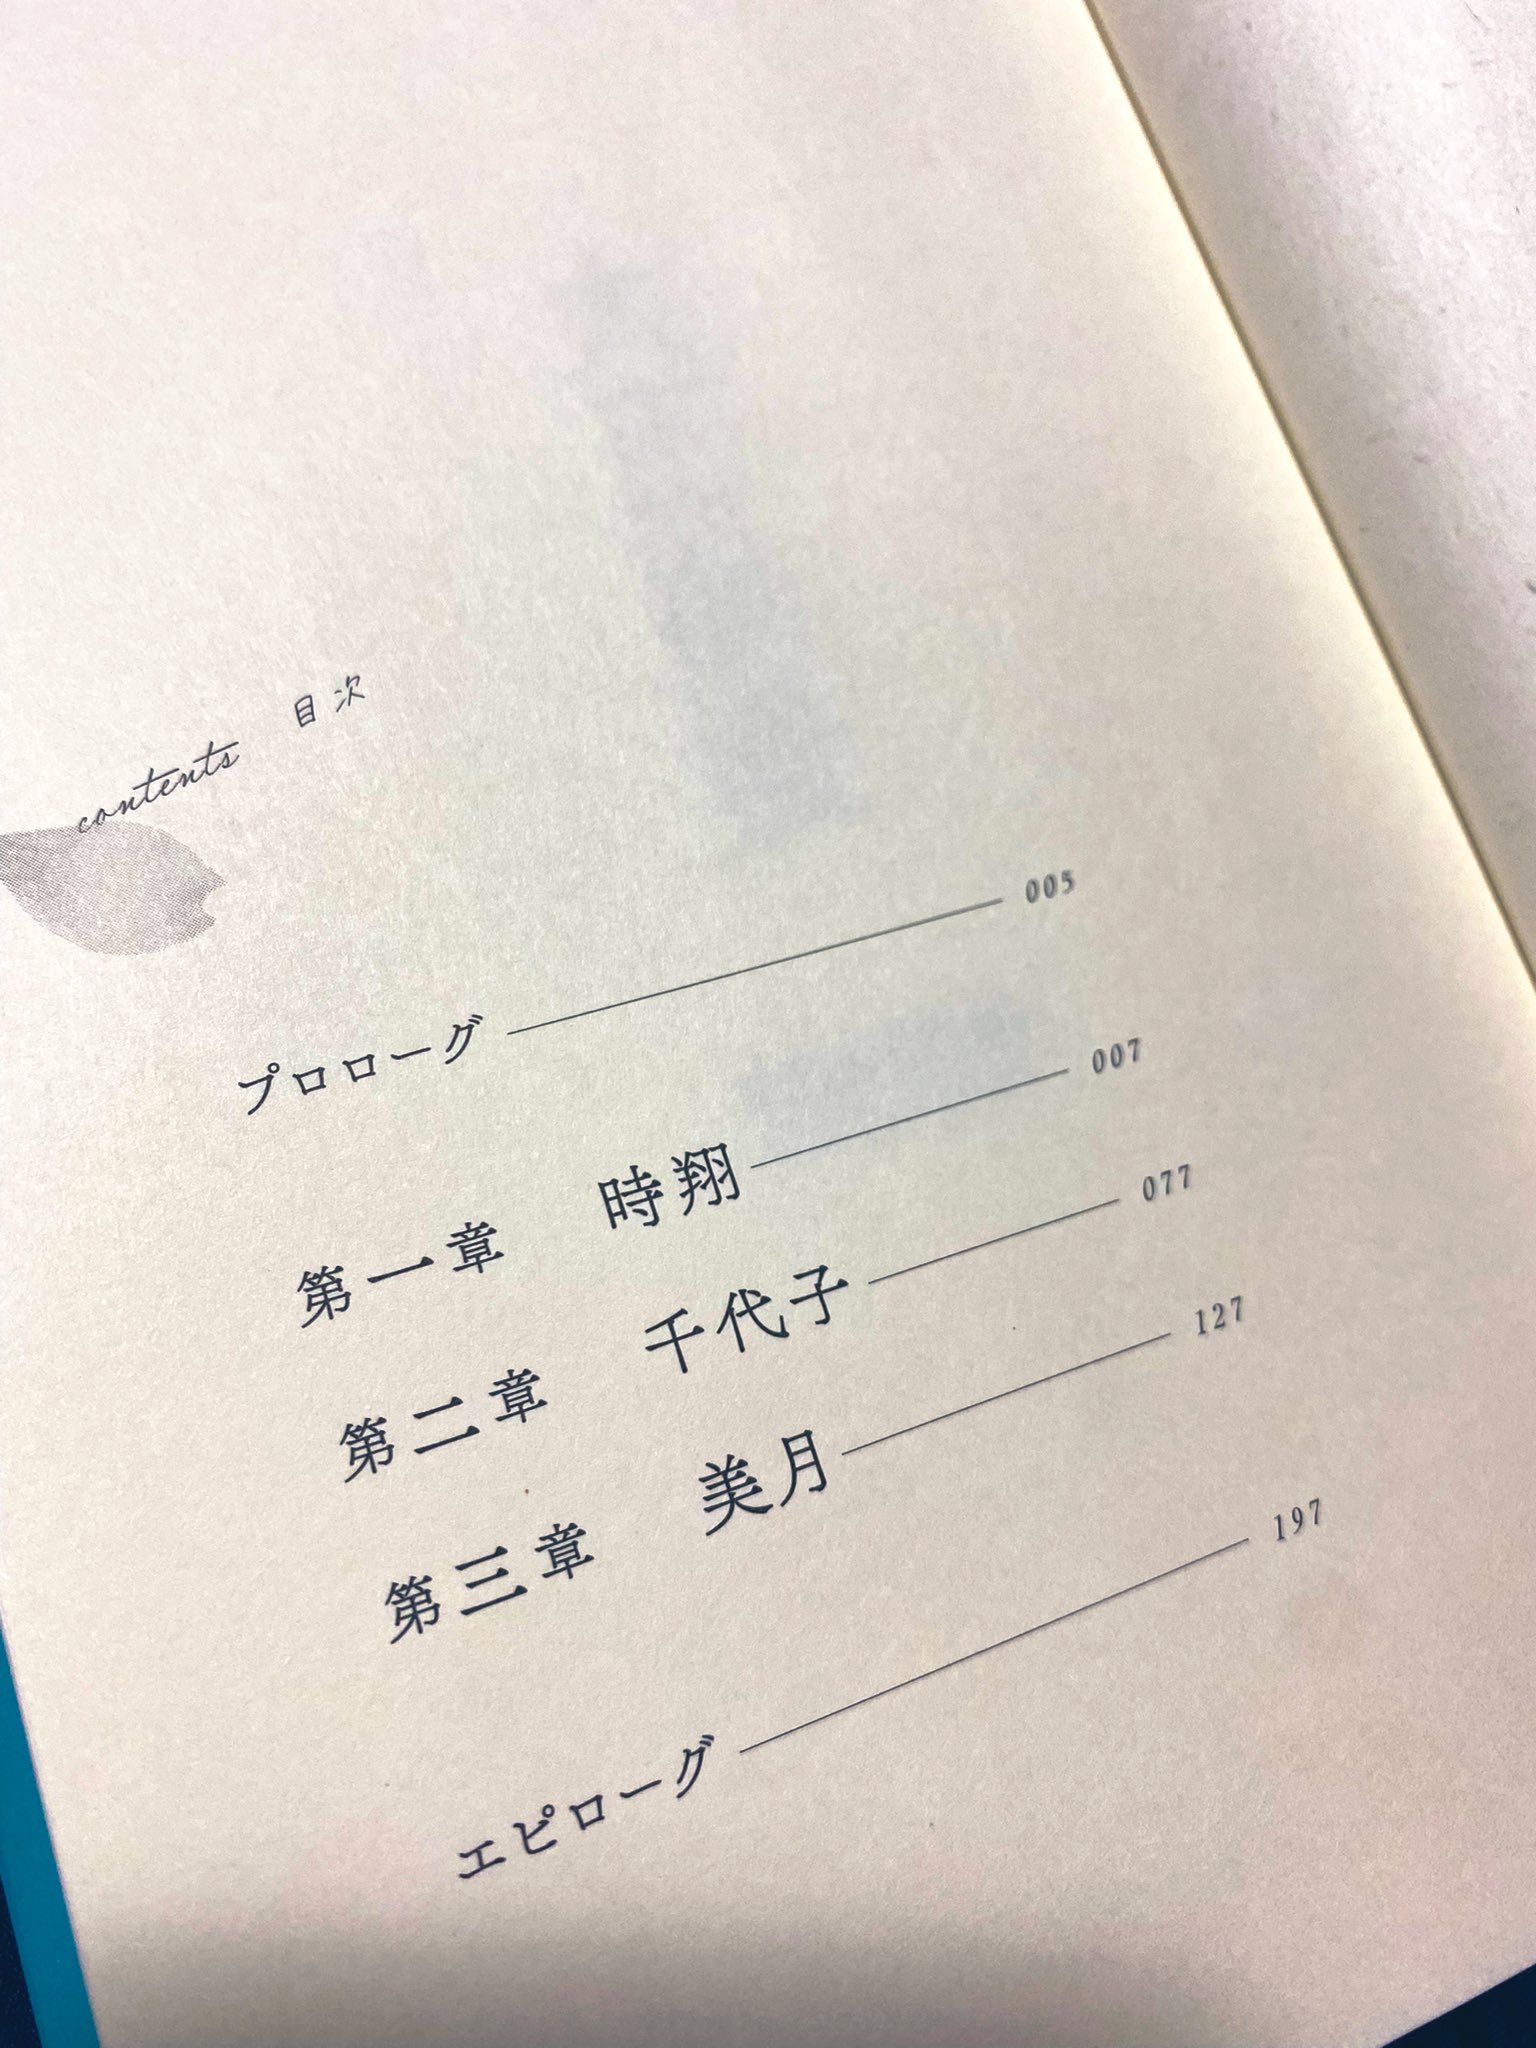 Yoasobi 関連書籍 公式 夜遊びコンテストvol 2 では 文字以内の作品募集だったのでnatsumiさんには書籍化にあたって そこから何倍もの長さの物語にしていただきました 千代子側の目線やその後の展開など 読み応え抜群な長編小説となりました